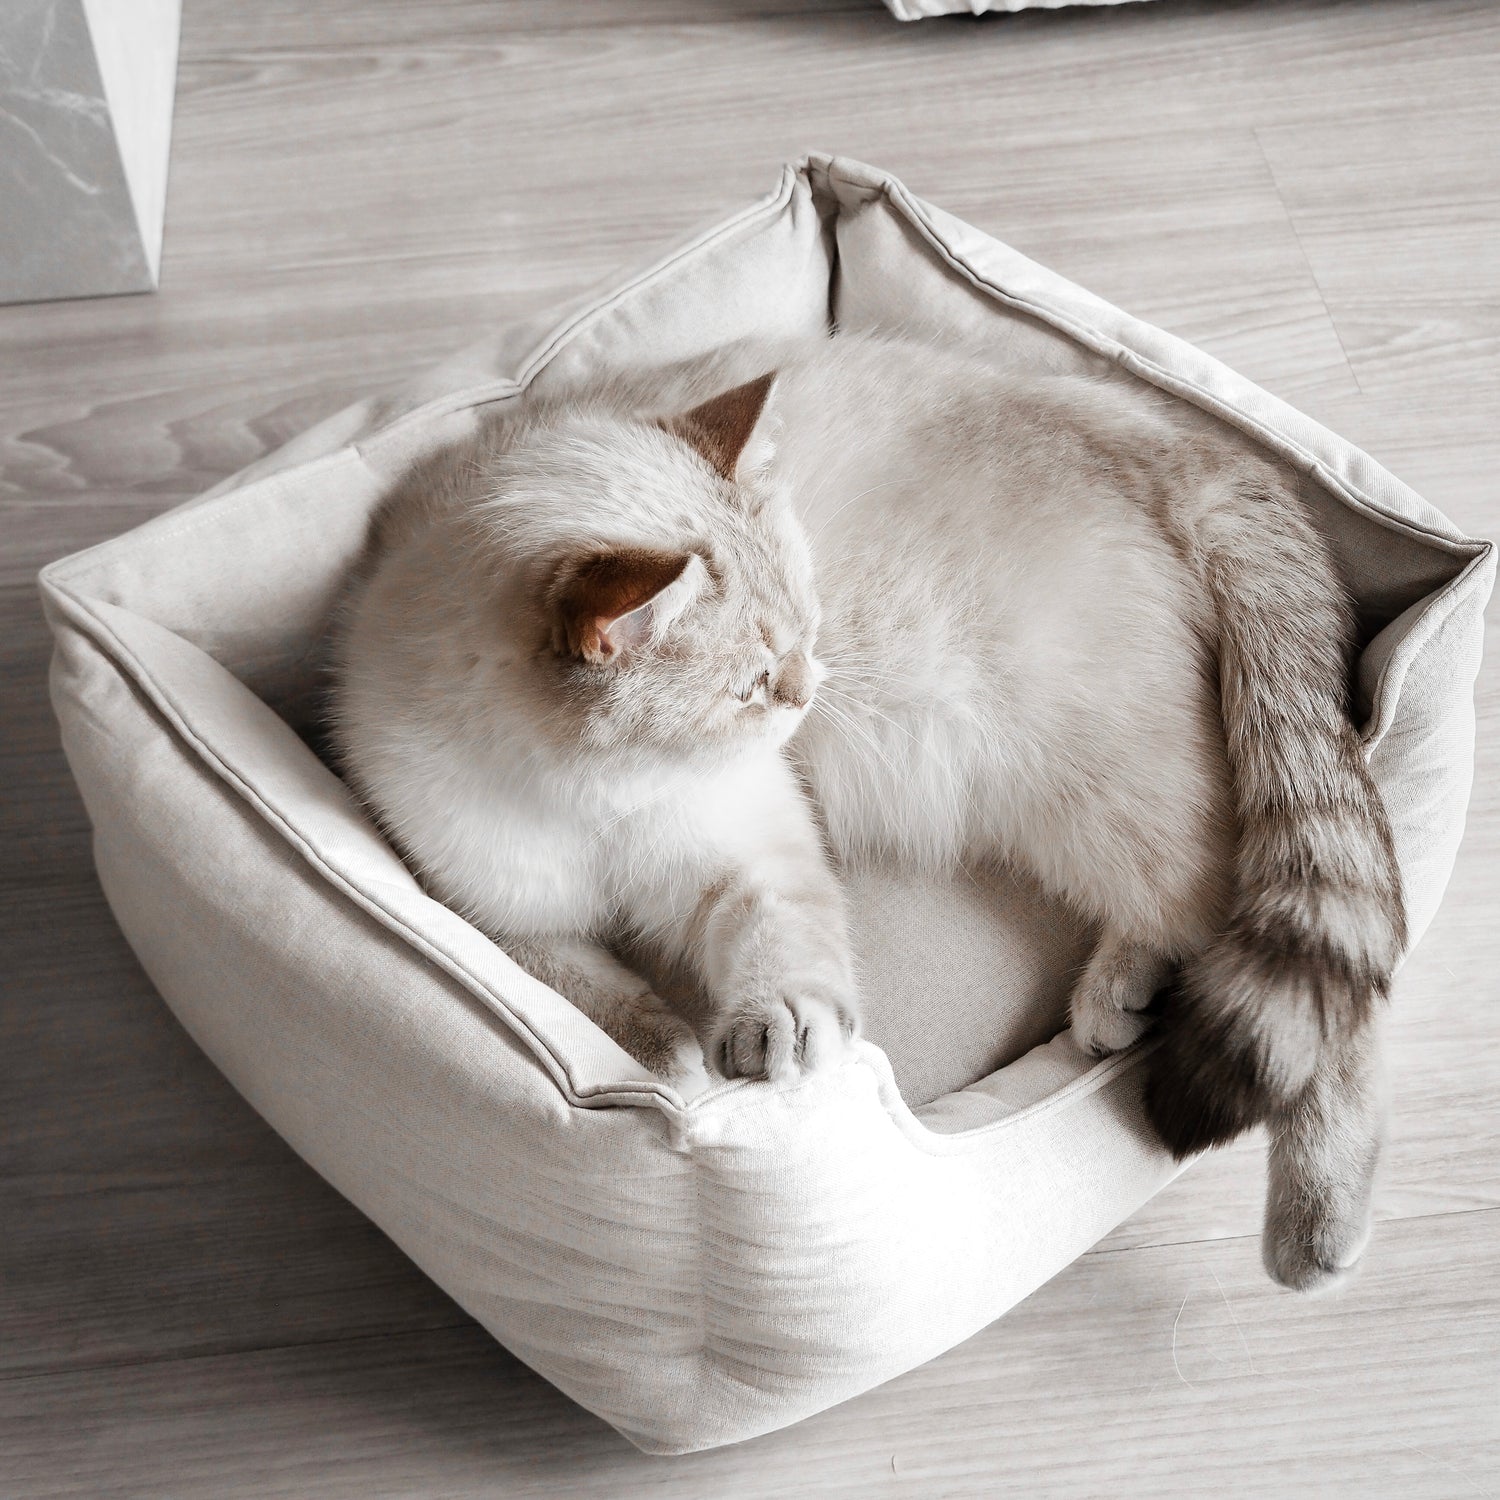 Im Katzenbett "LINEN" liegt eine Katze und genießt ihr neues Körbchen als gemütlichen Rückzugsort.